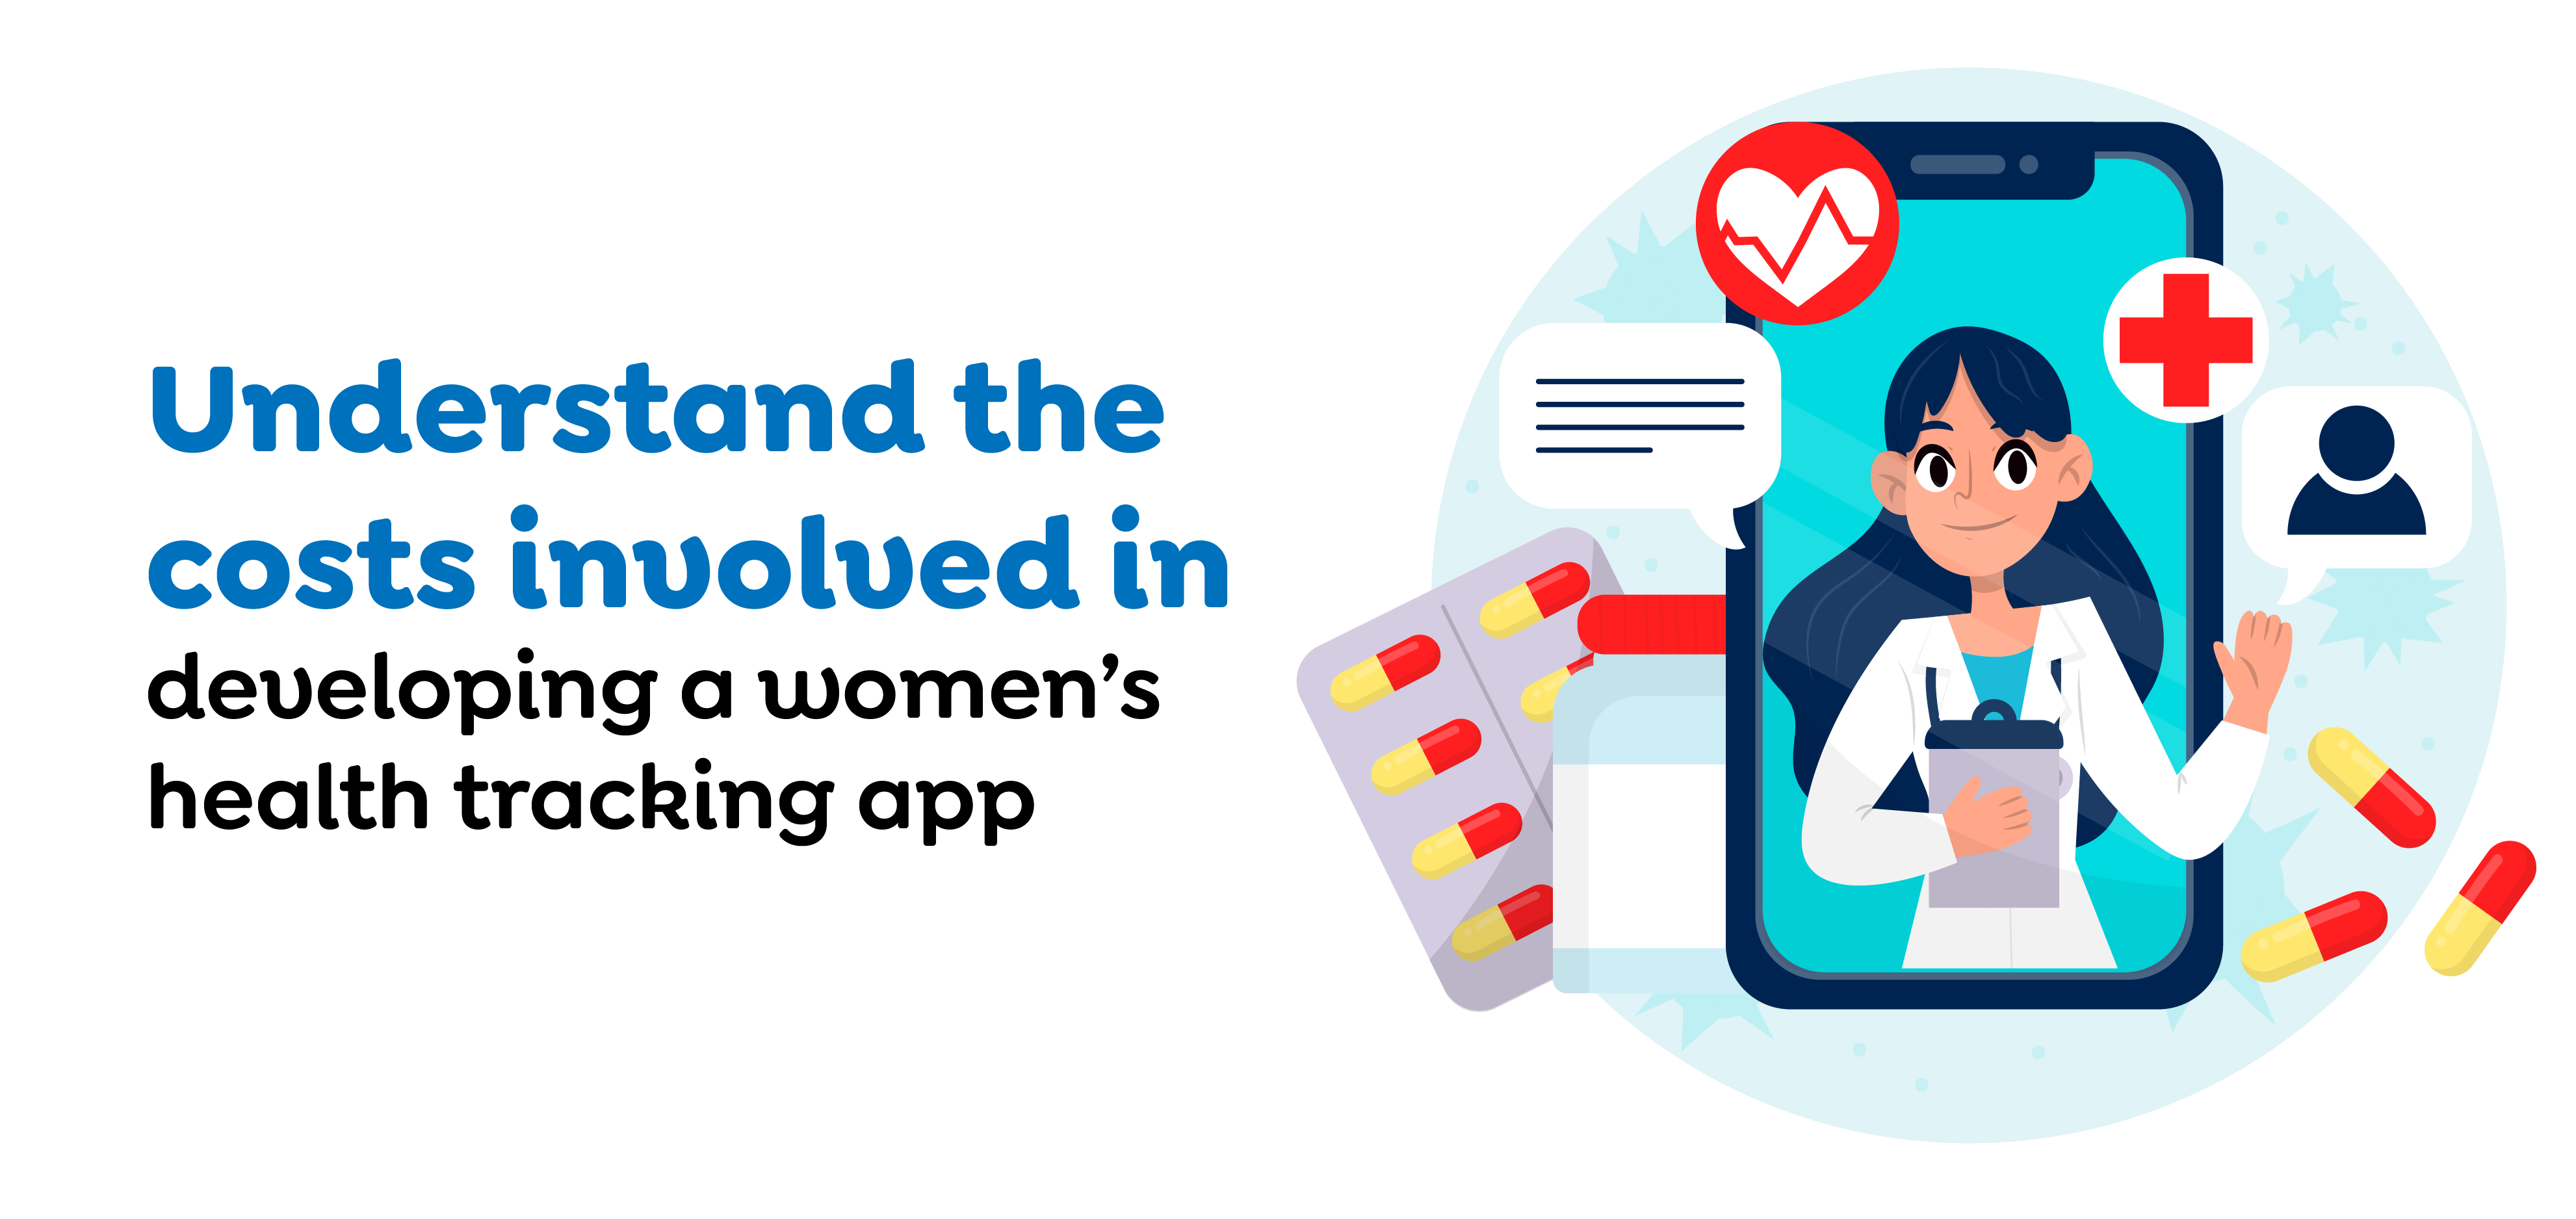 women’s health app cost